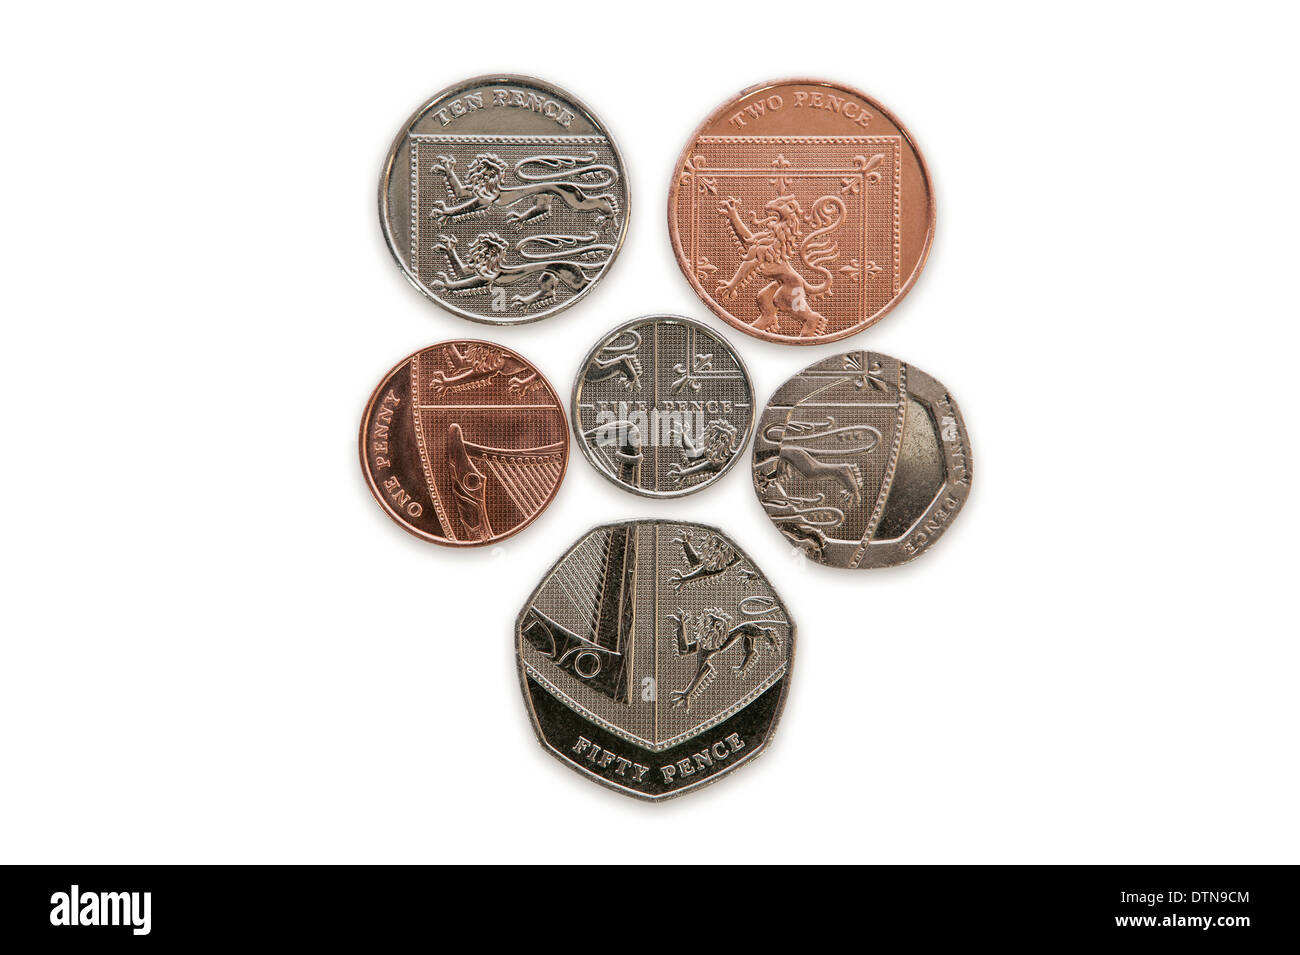 BRITISCHE STERLING MÜNZEN Währung, die das Queen's Coat bilden Armschutz - Ausschnitt Stockfoto